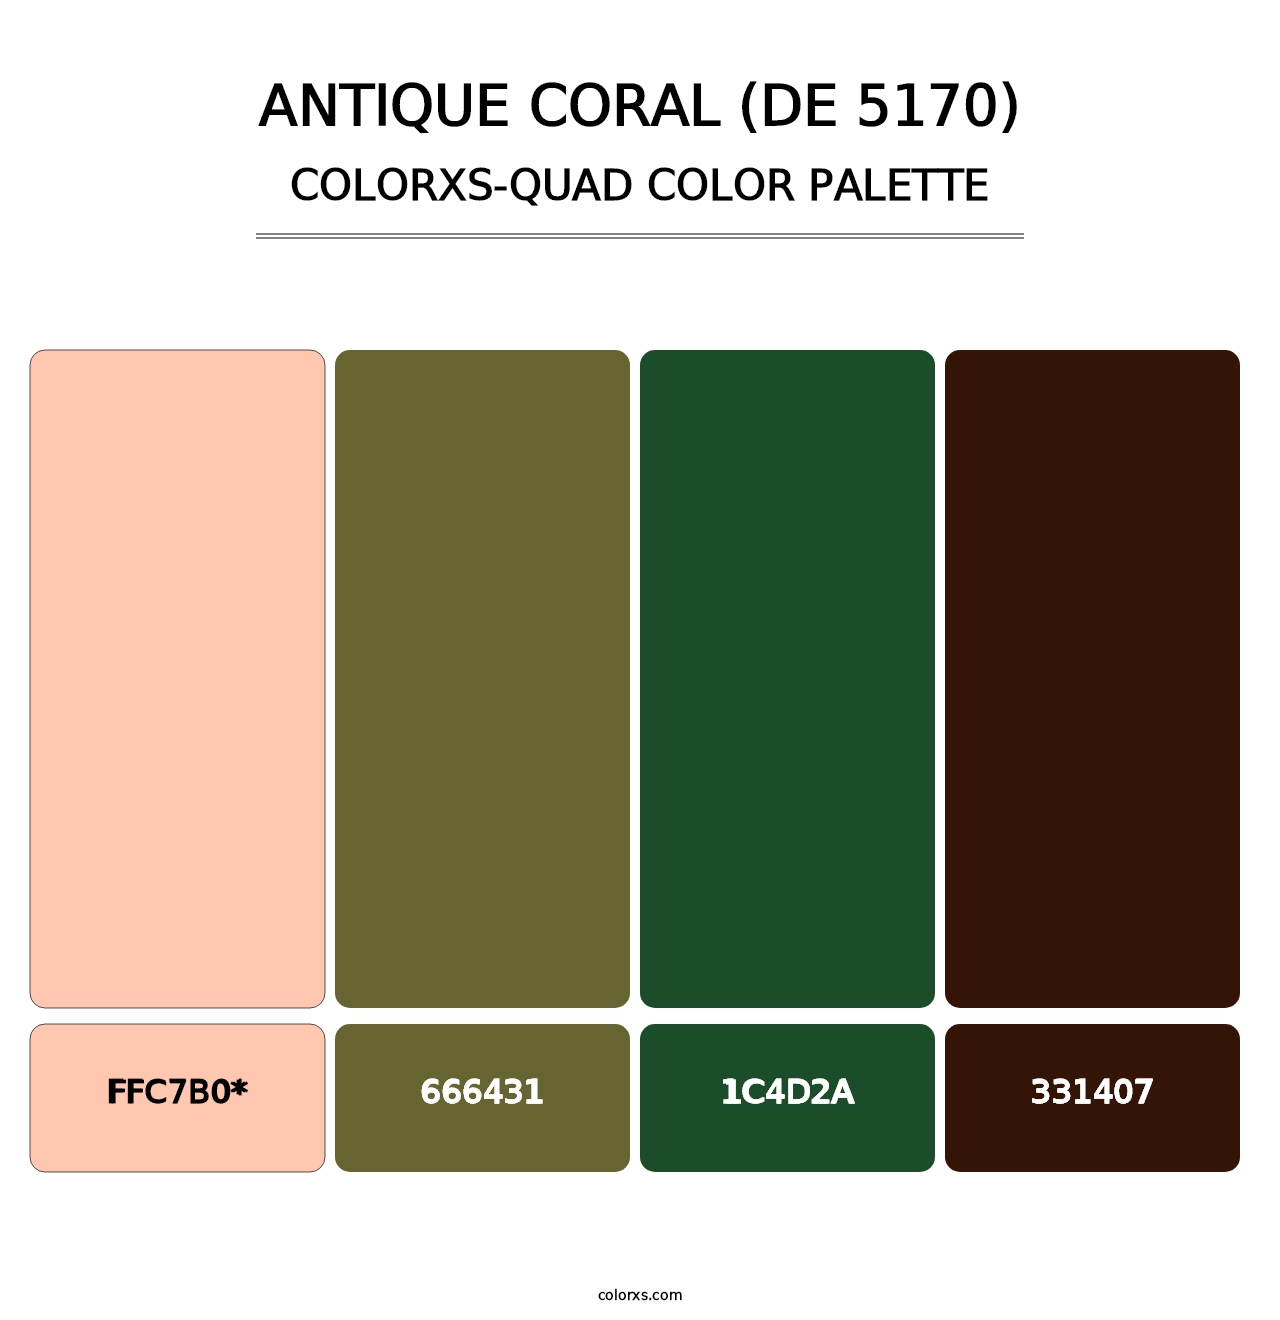 Antique Coral (DE 5170) - Colorxs Quad Palette